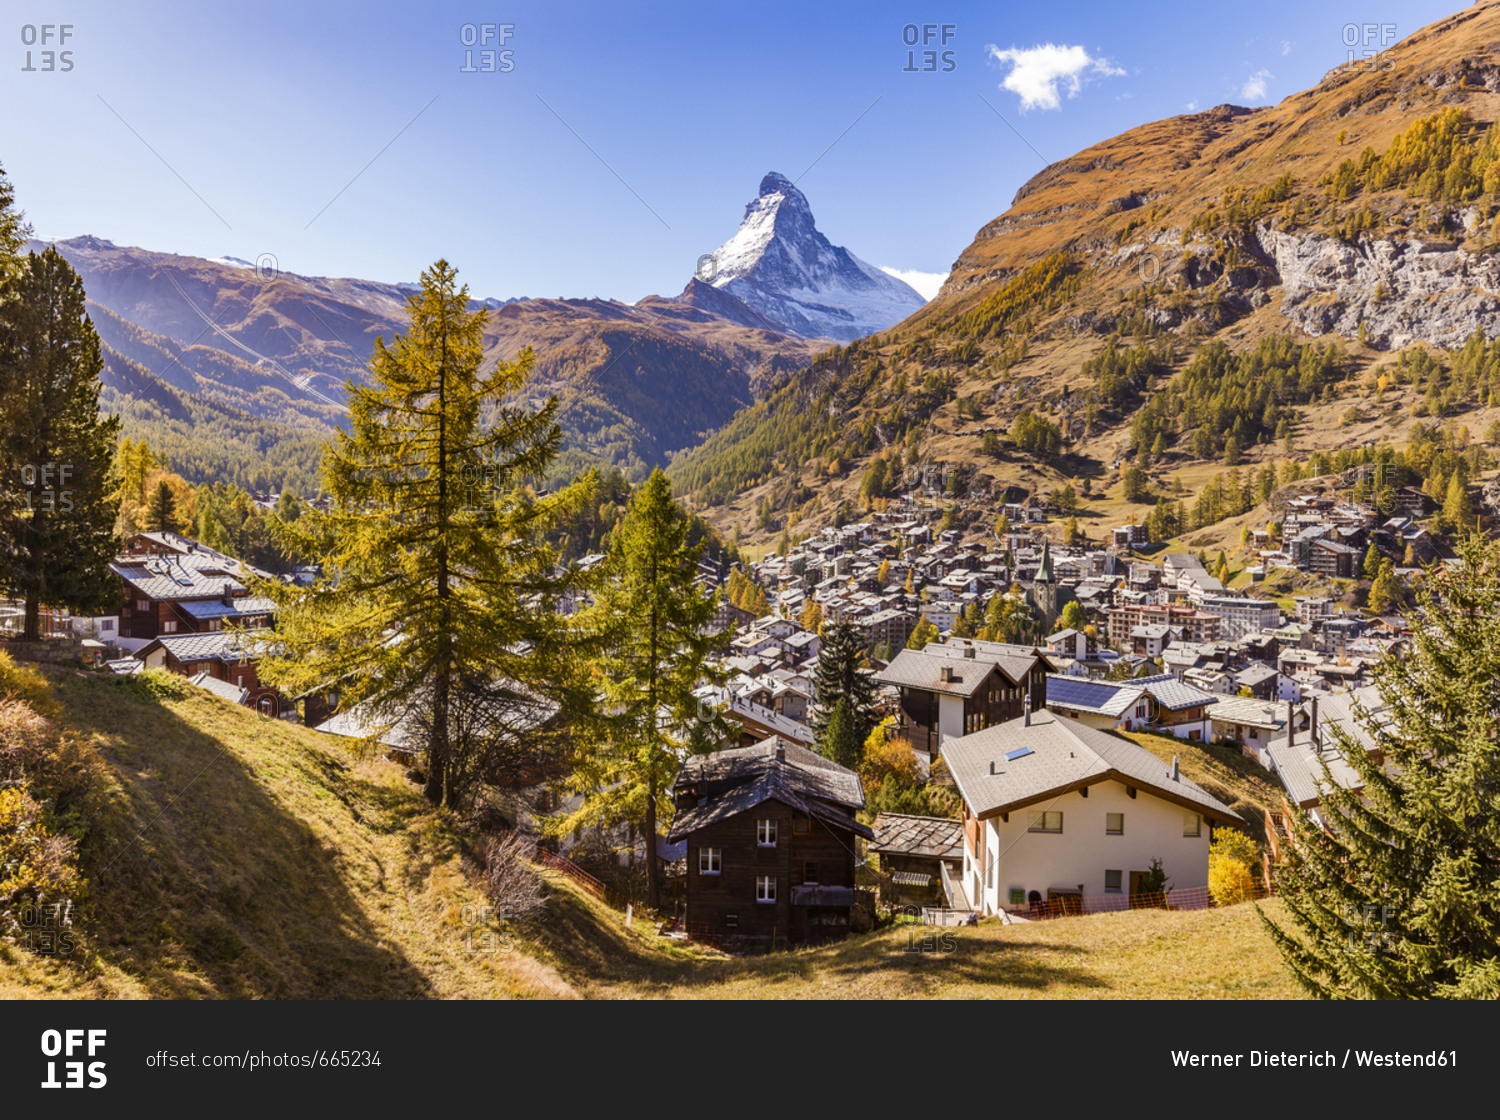 Switzerland- Valais- Zermatt- Matterhorn- townscape- chalets- holiday homes